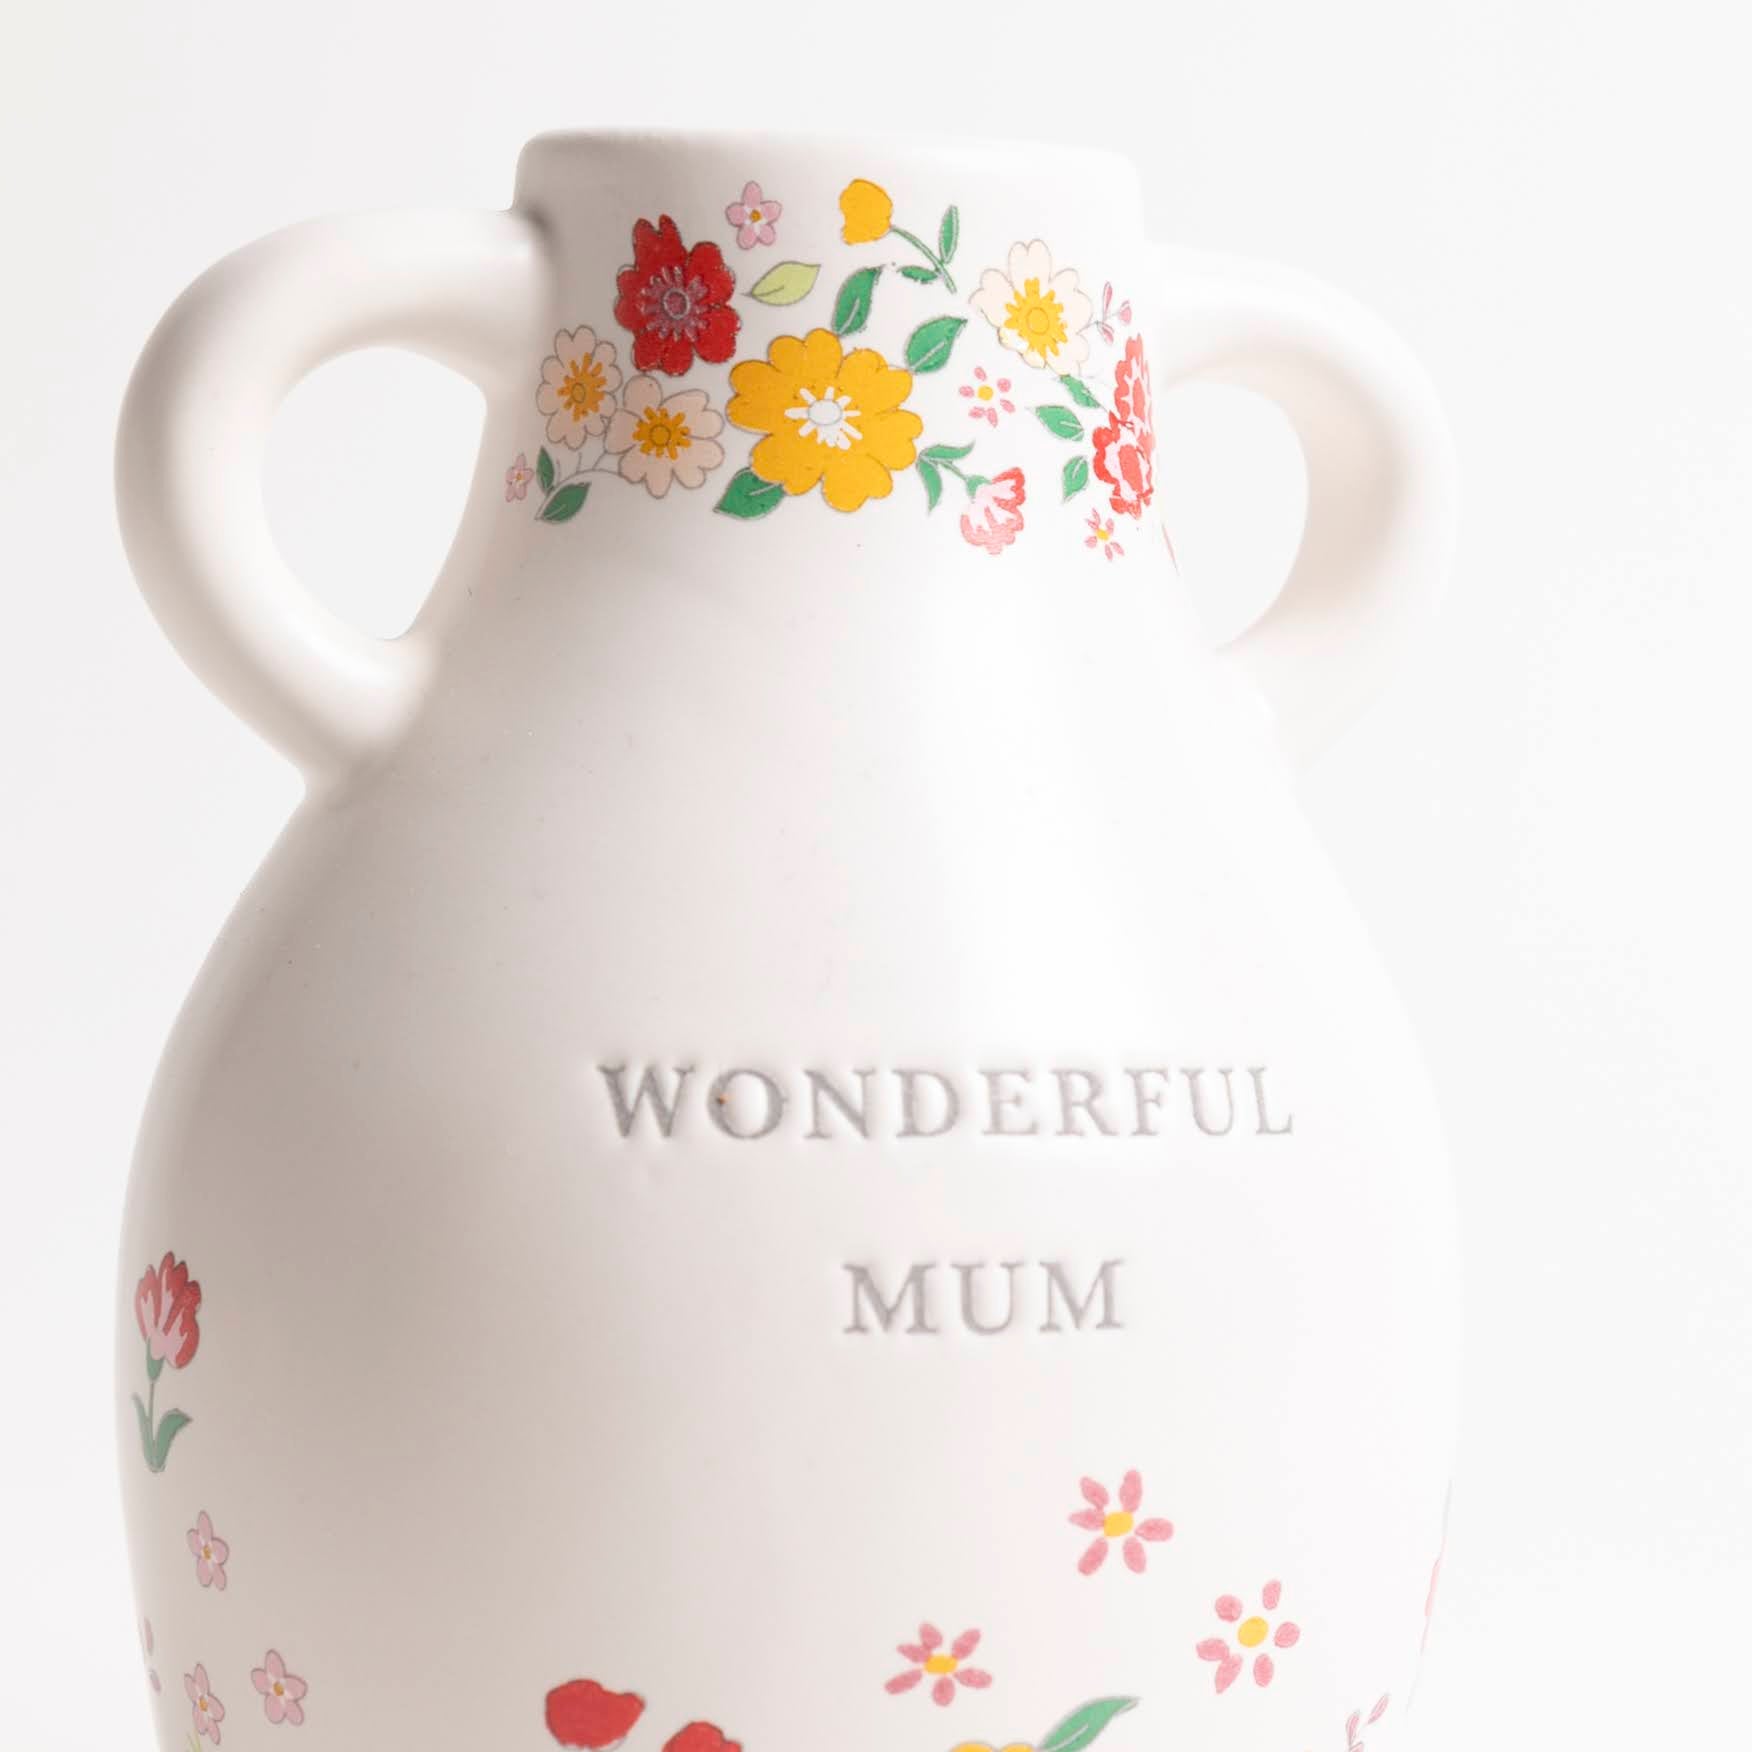 Large Ceramic Wonderful Mum Floral Vase - P I C N I C 